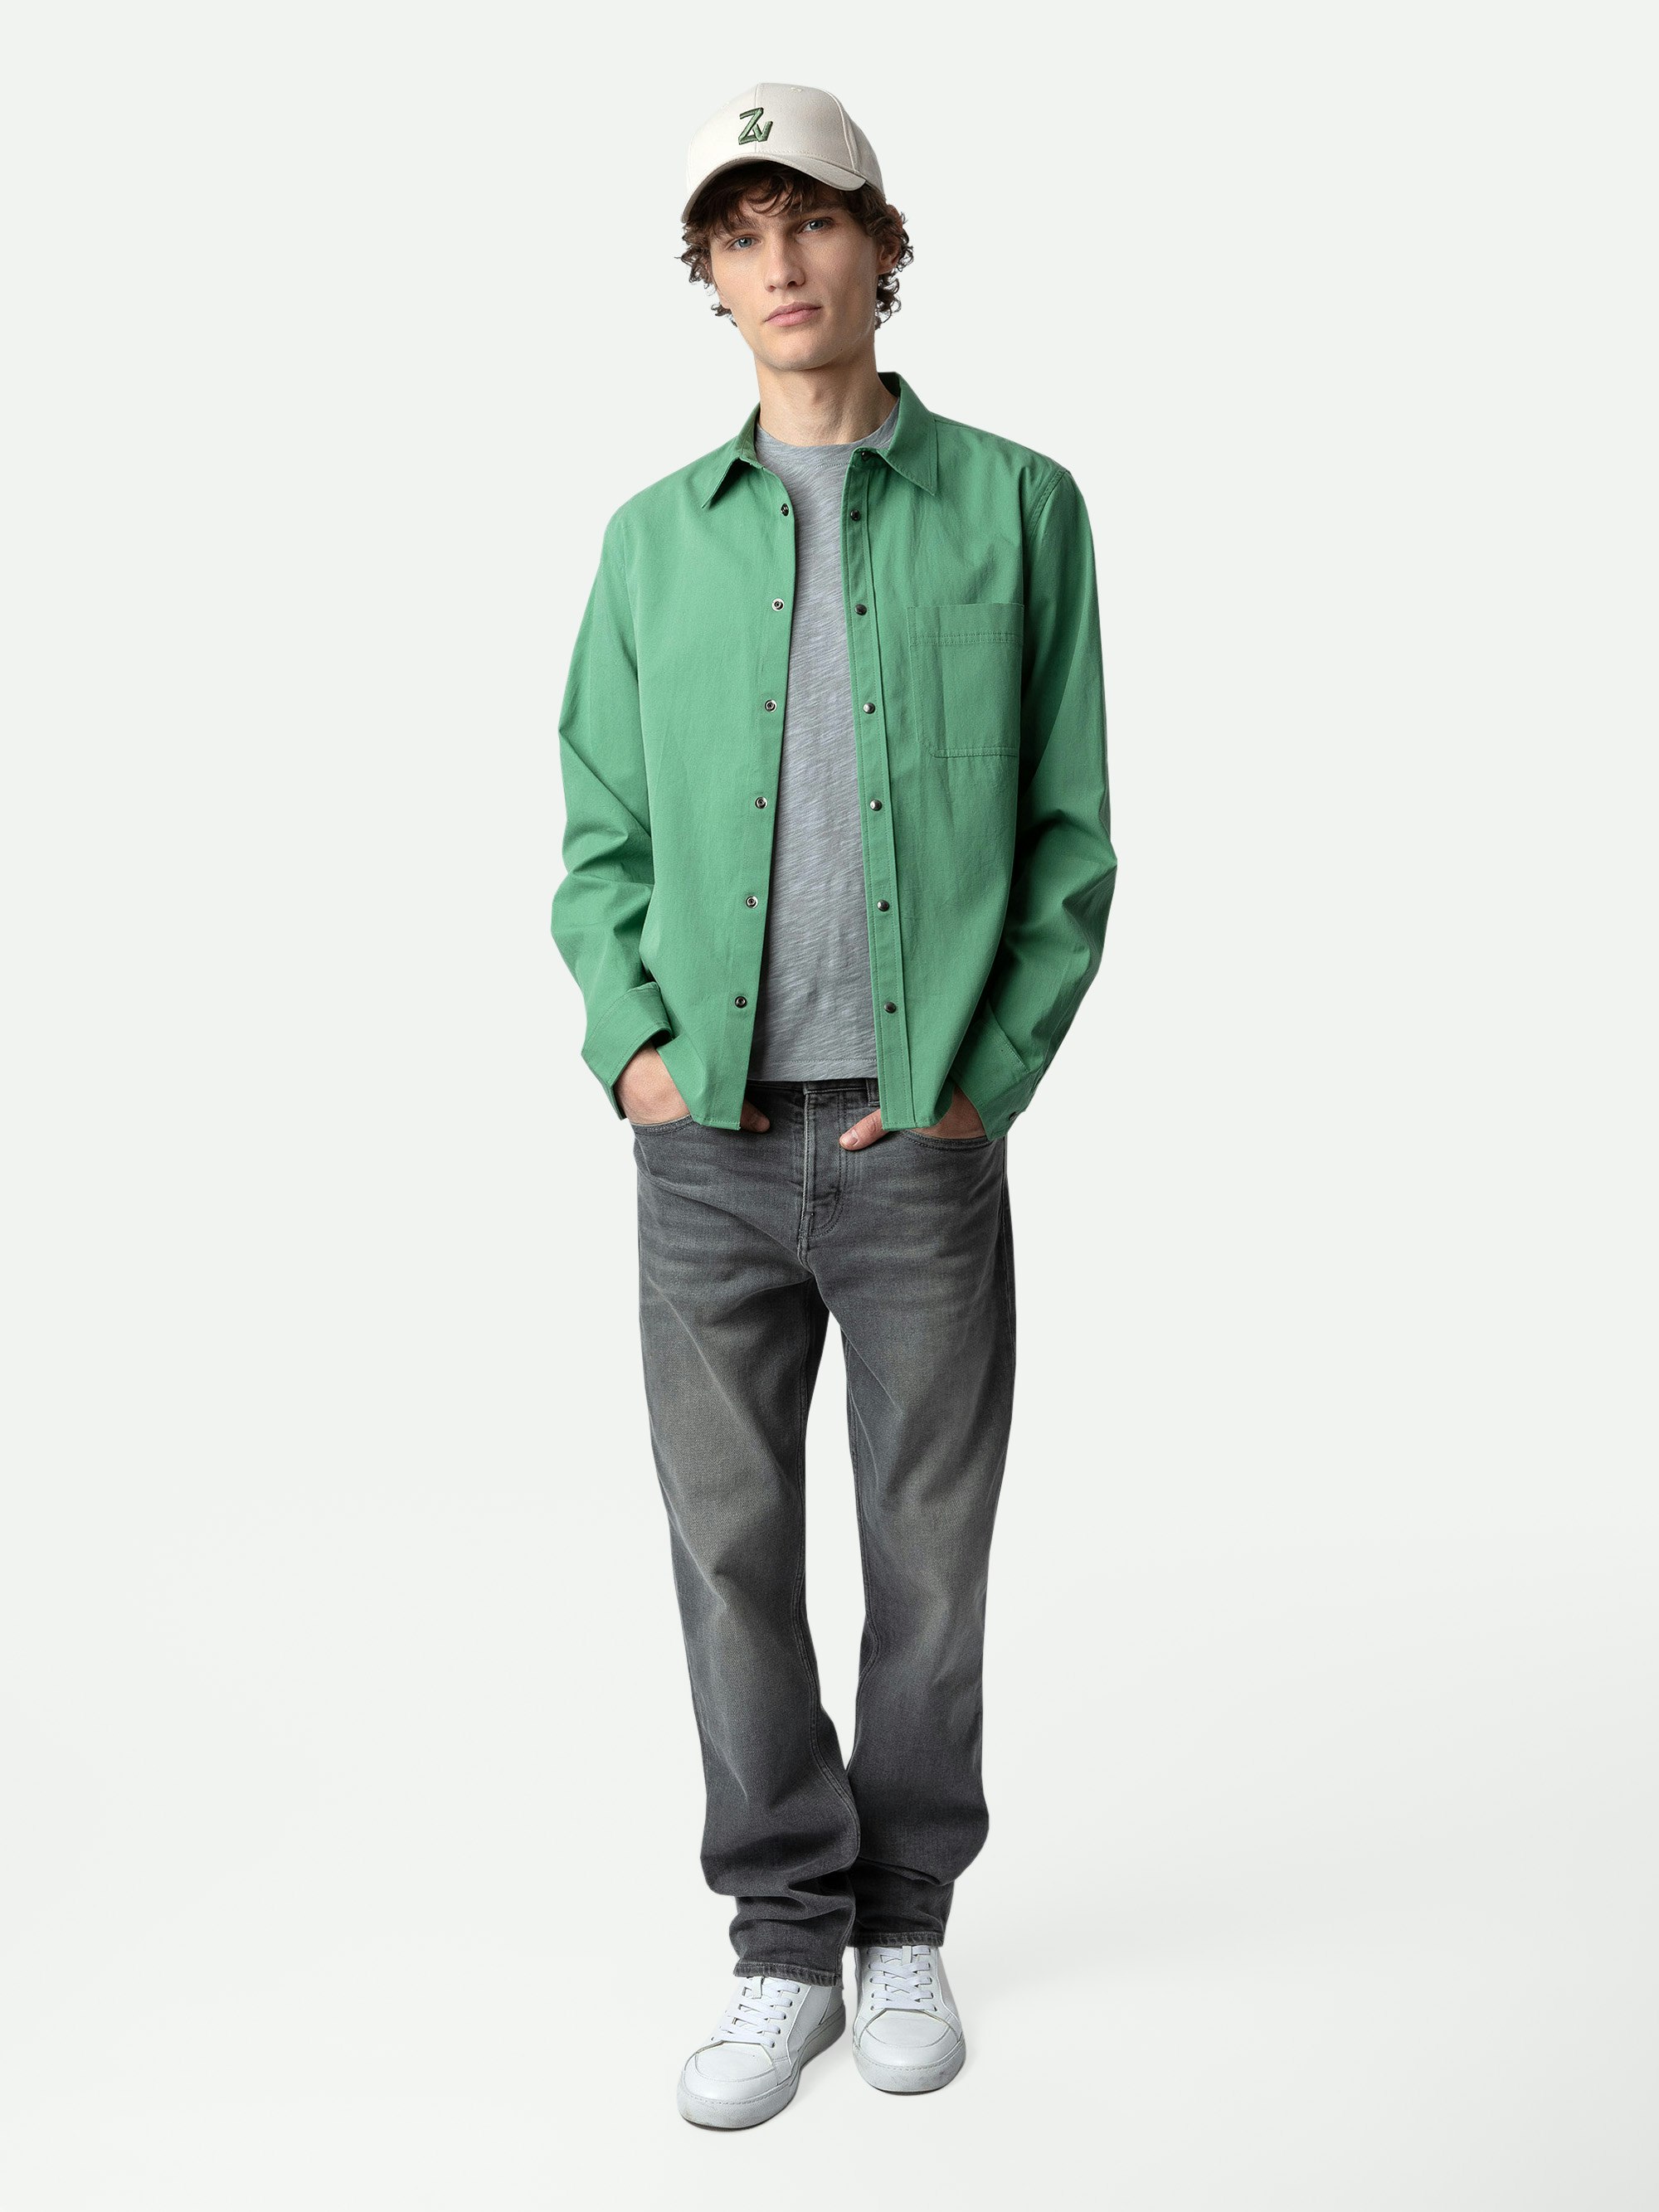 Hemd Stan - Grünes Hemd aus Baumwolltwill mit aufgesetzter Tasche und Verzierungen auf dem Rücken von Humberto Cruz.